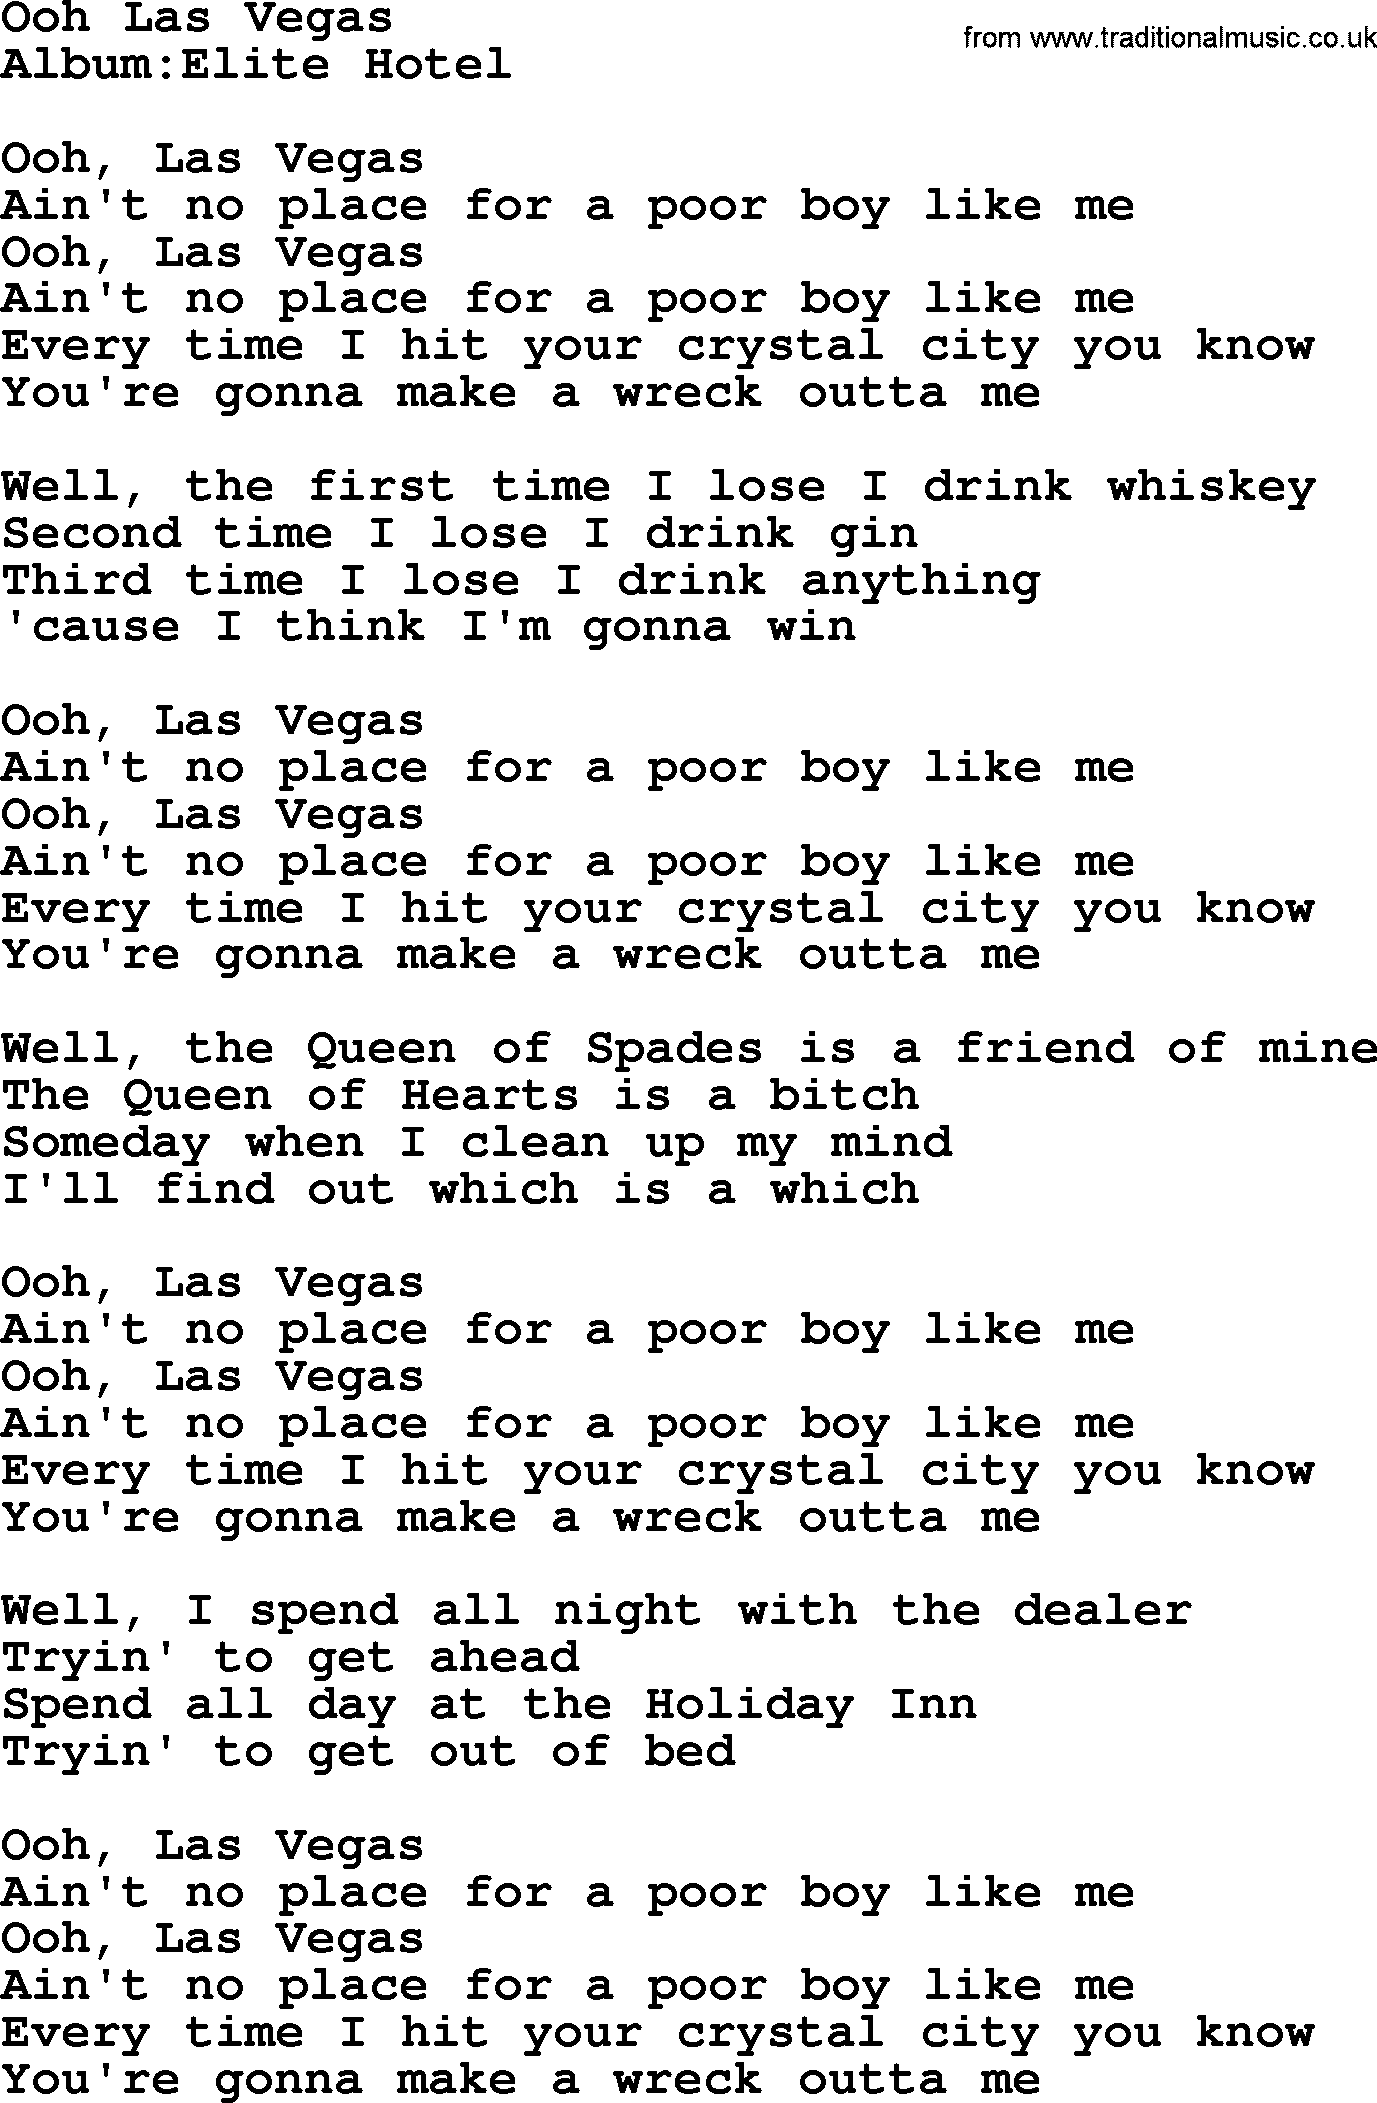 Emmylou Harris song: Ooh Las Vegas lyrics